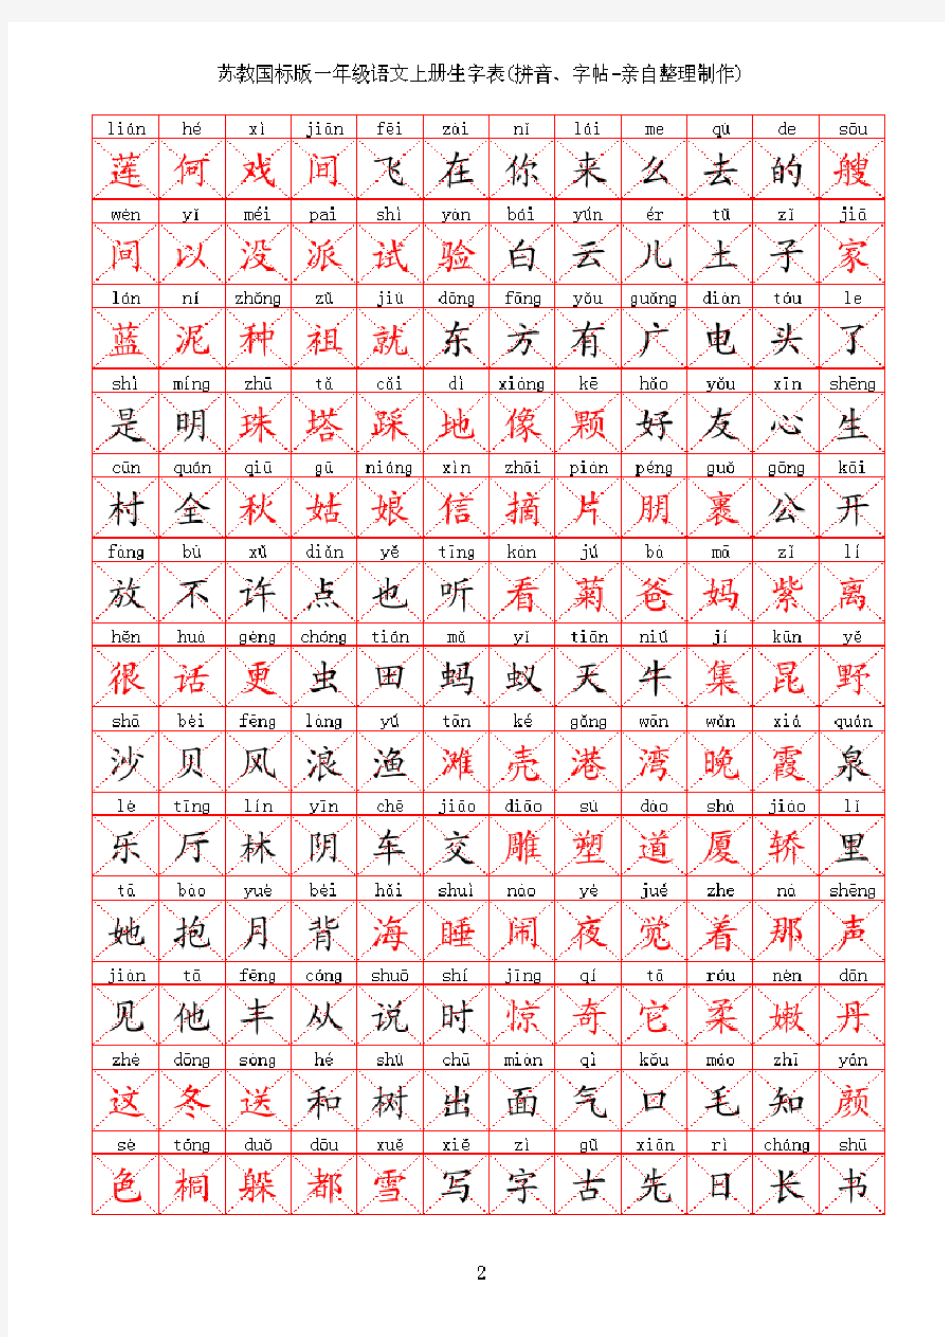 苏教版小学语文一年级生字表上下册拼音字帖亲自整理制作